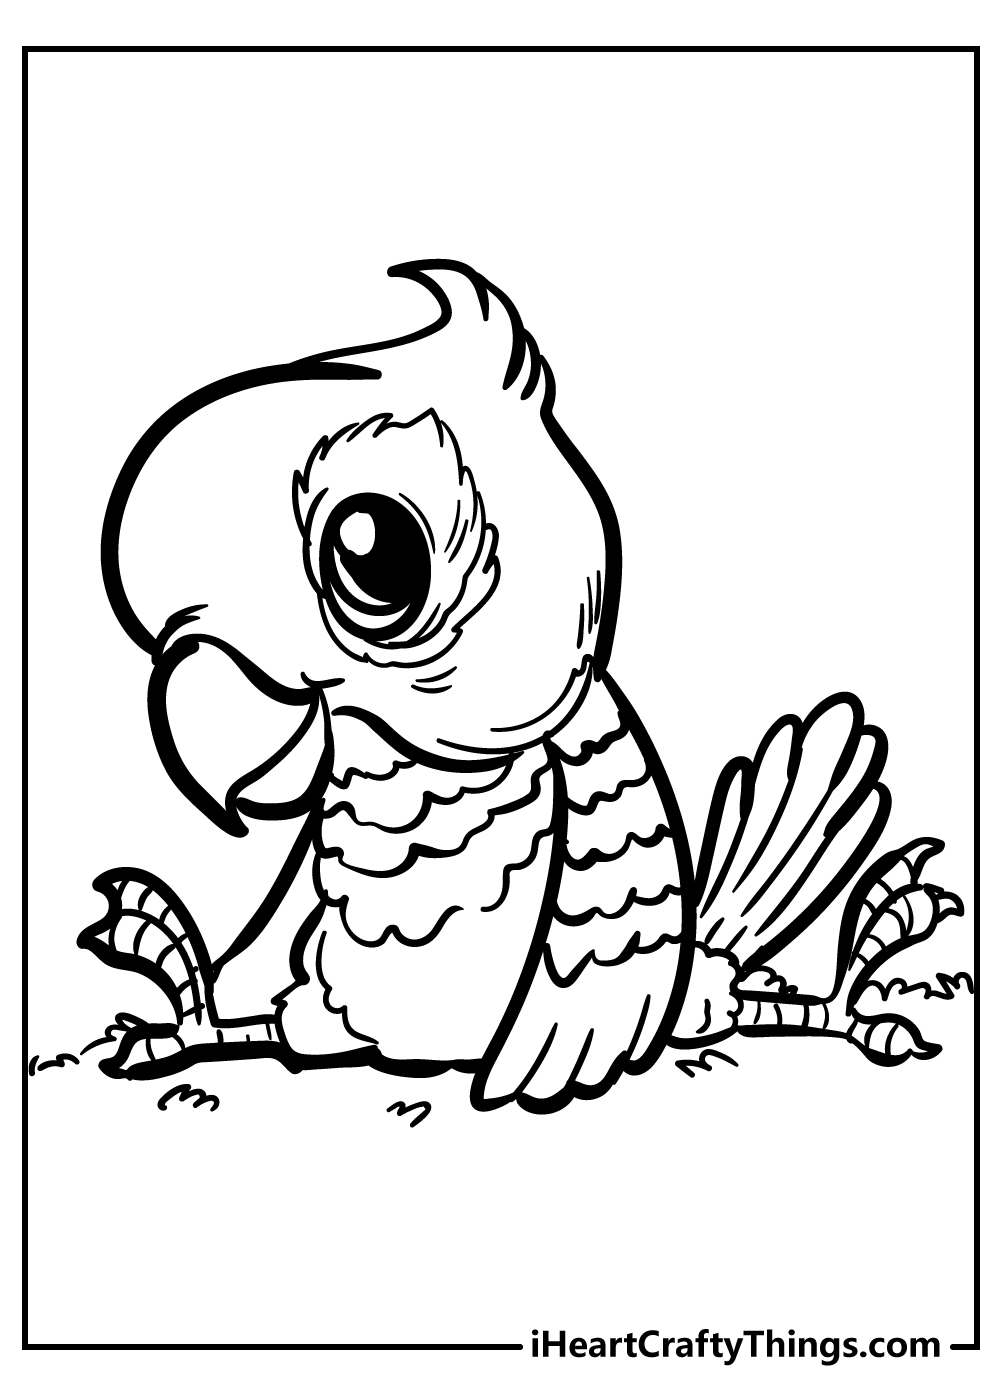 Bird coloring book free printable